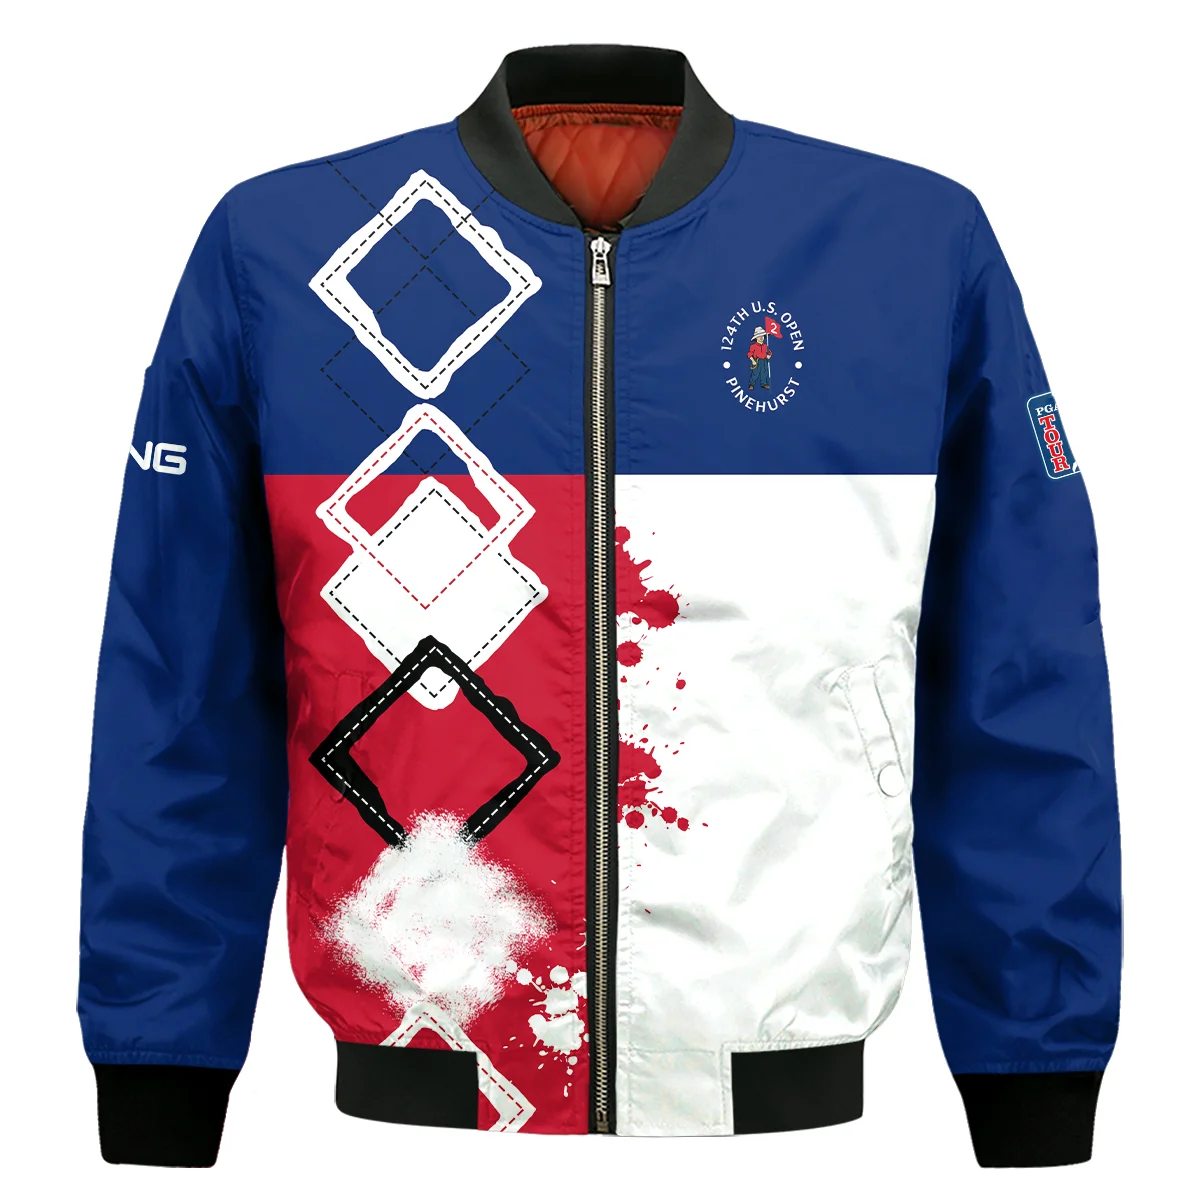 124th U.S. Open Pinehurst Ping Bomber Jacket Blue Red White Pattern Grunge All Over Print Bomber Jacket